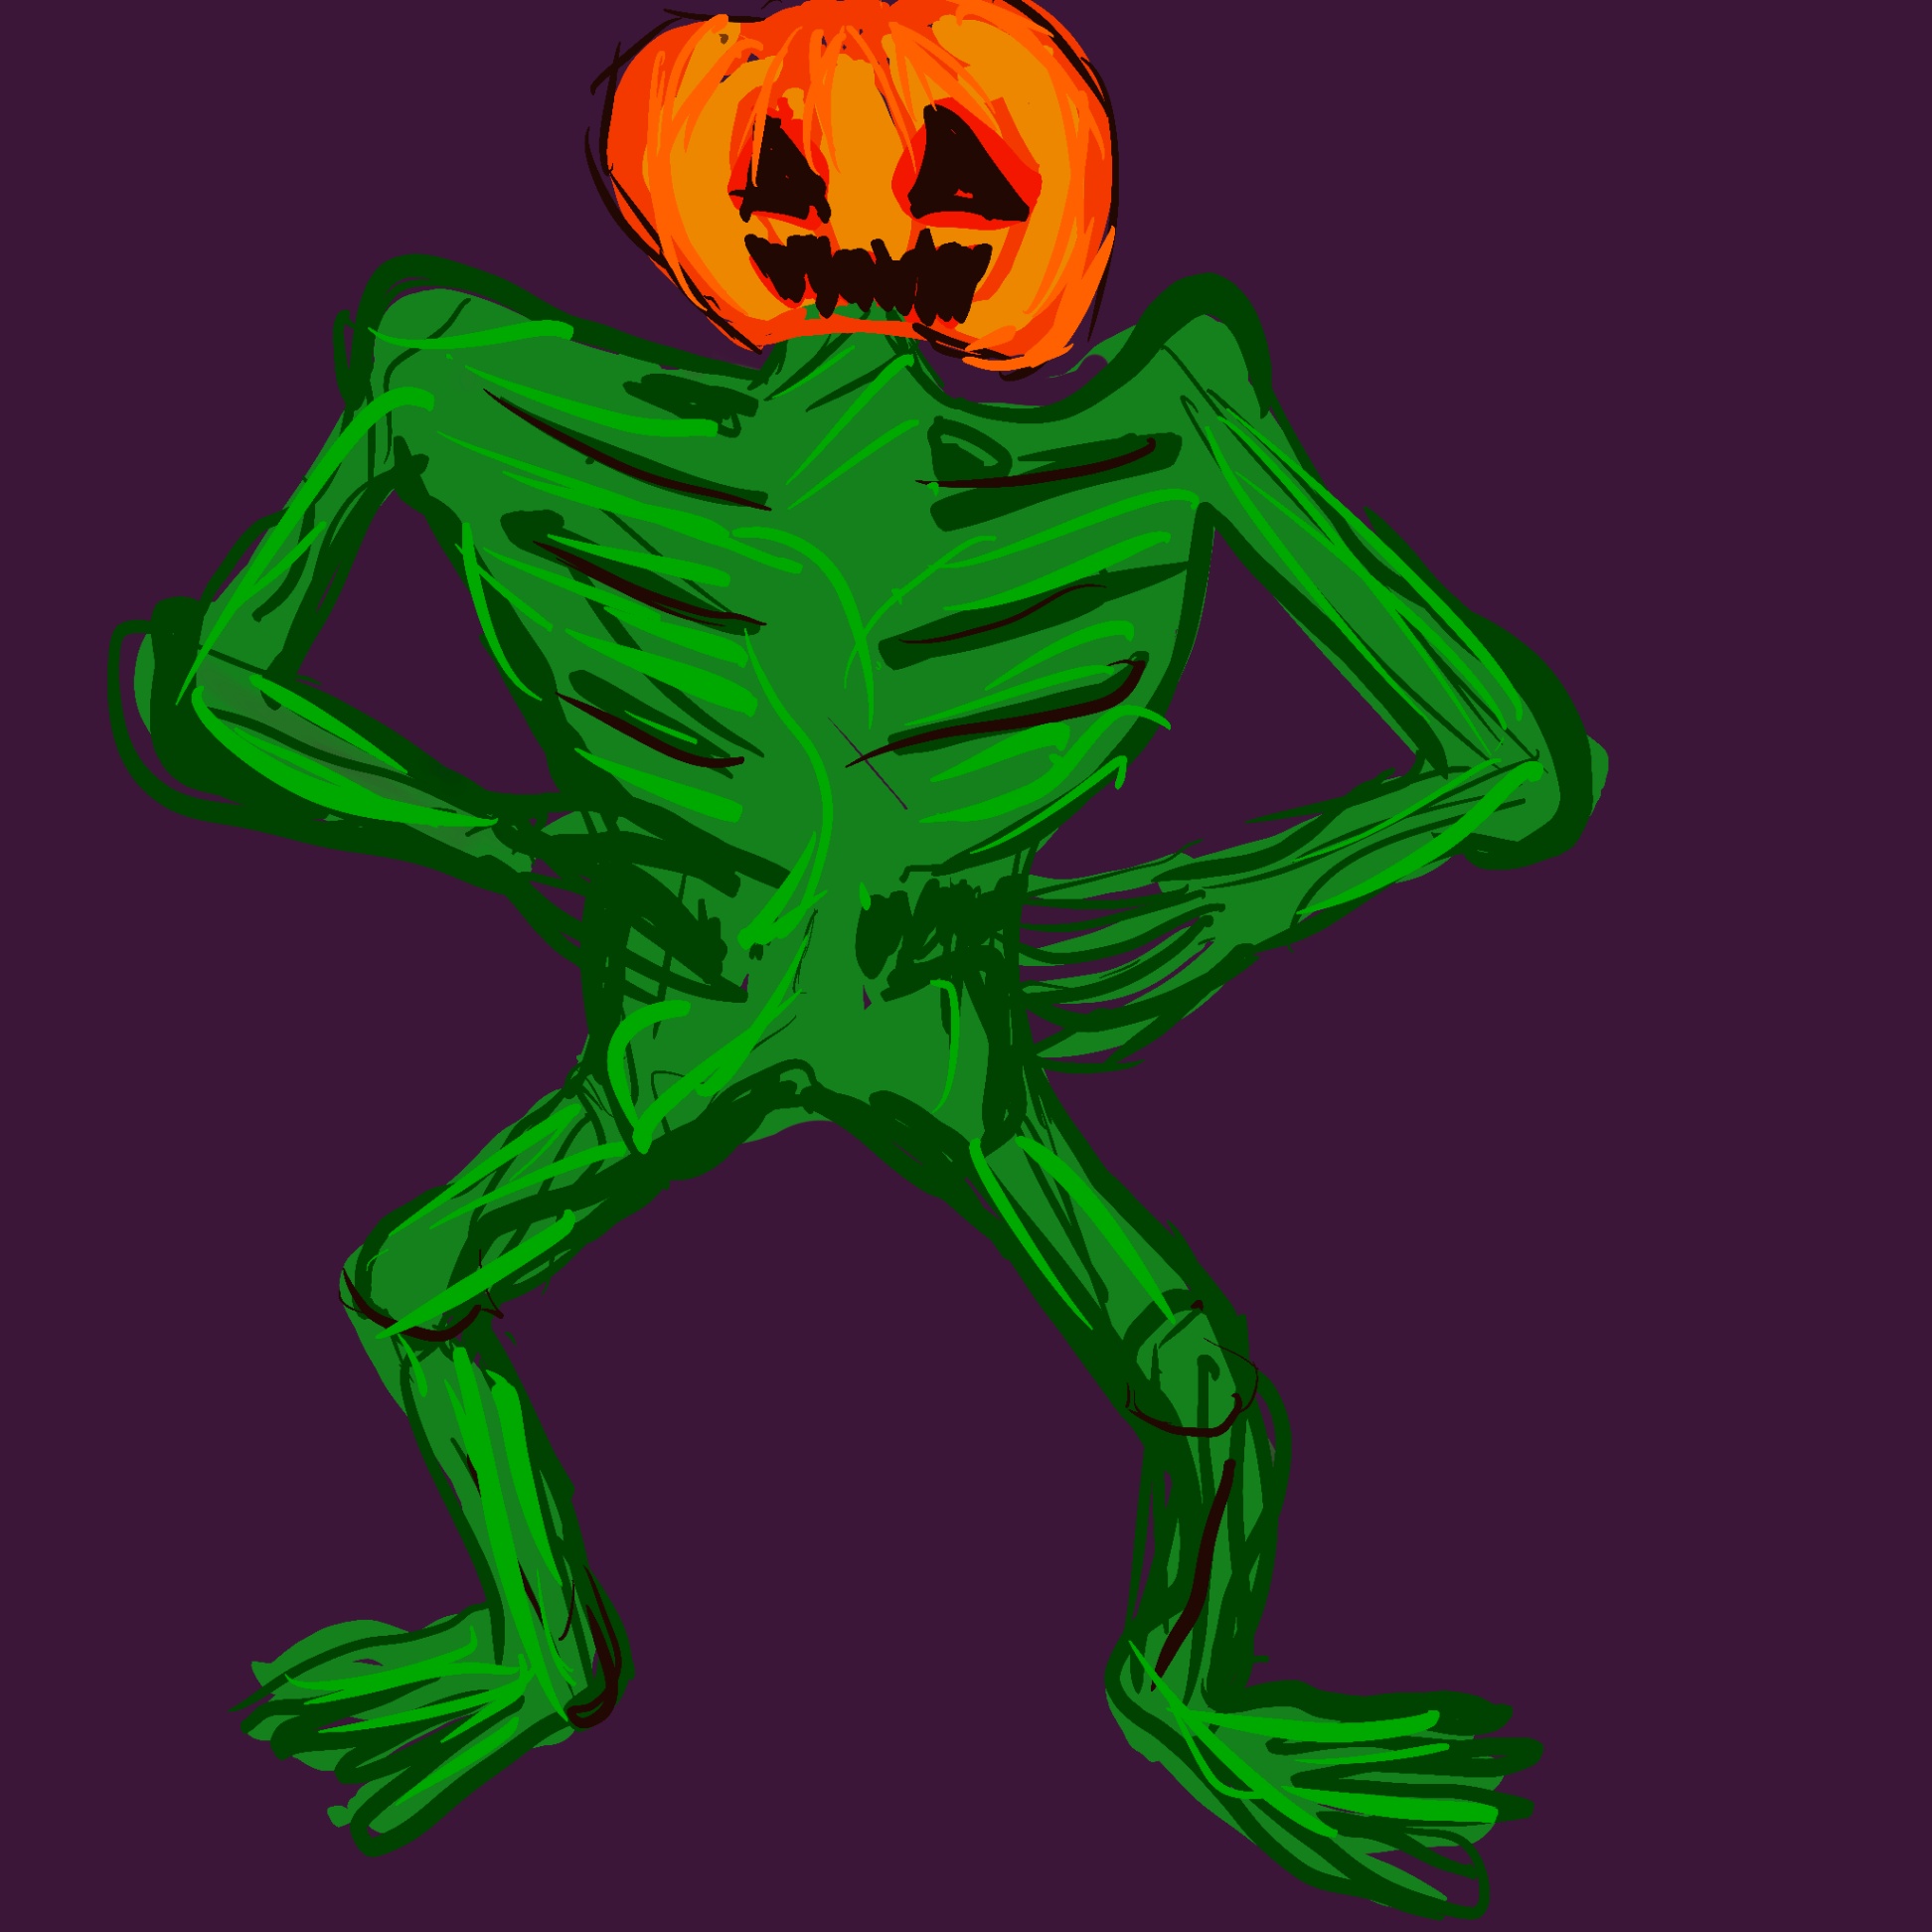 Pumpkin Man concept art